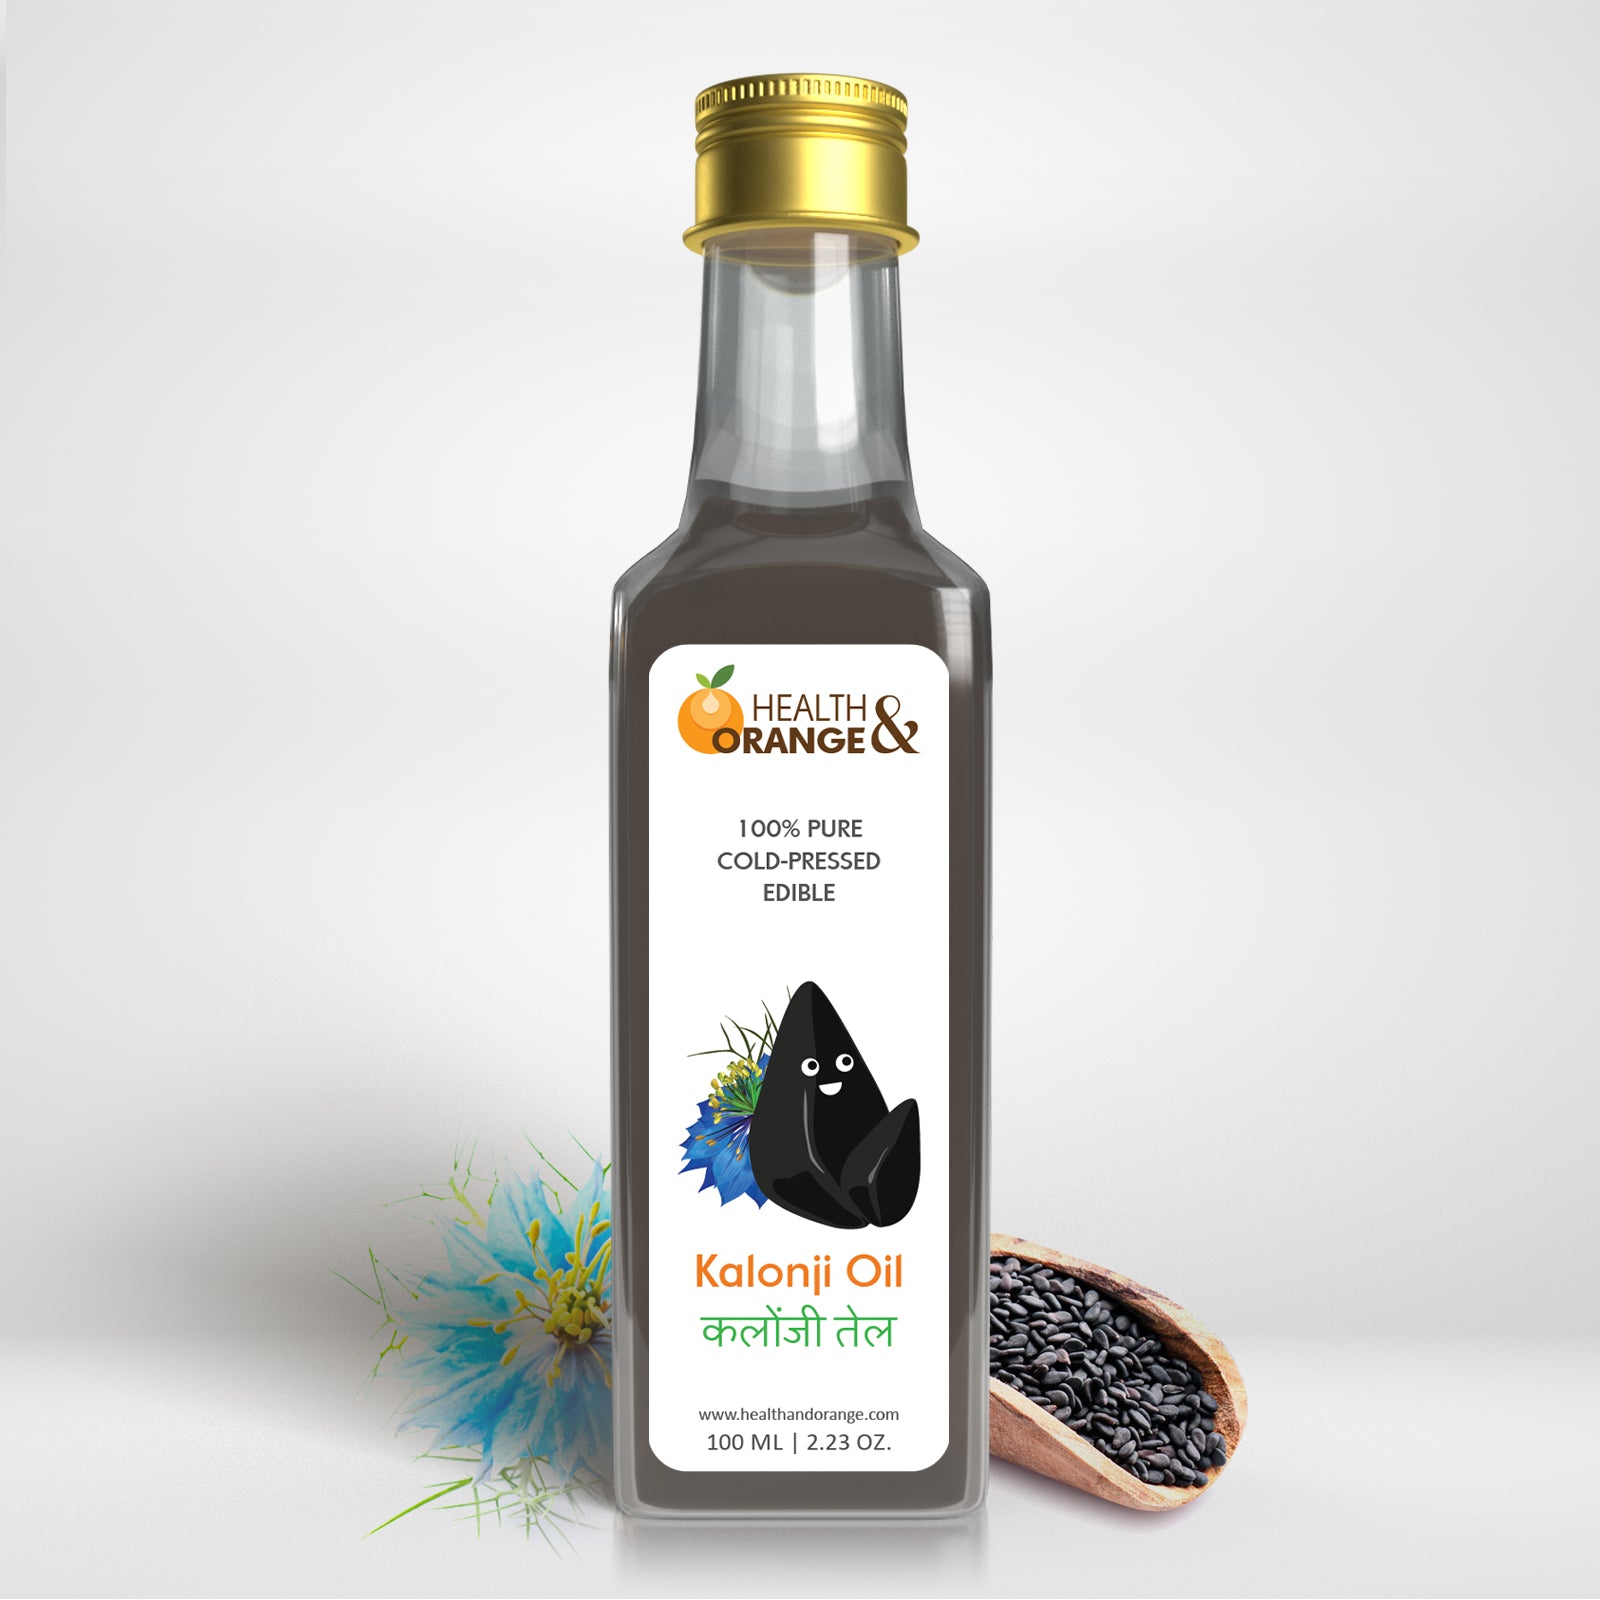 Kalonji Oil – Health and Orange